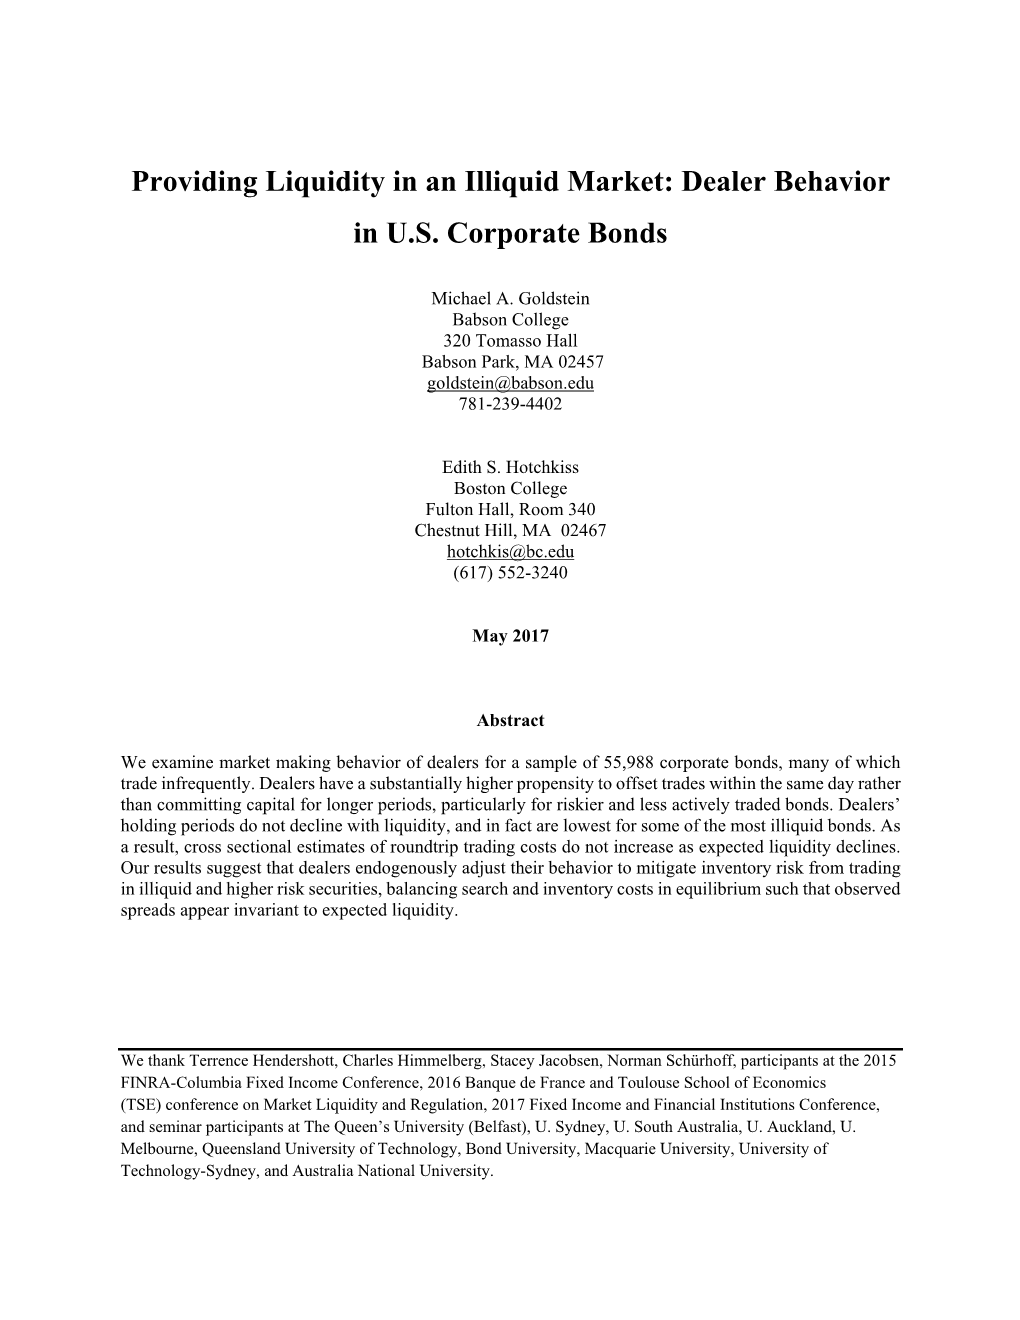 Providing Liquidity in an Illiquid Market: Dealer Behavior in U.S. Corporate Bonds